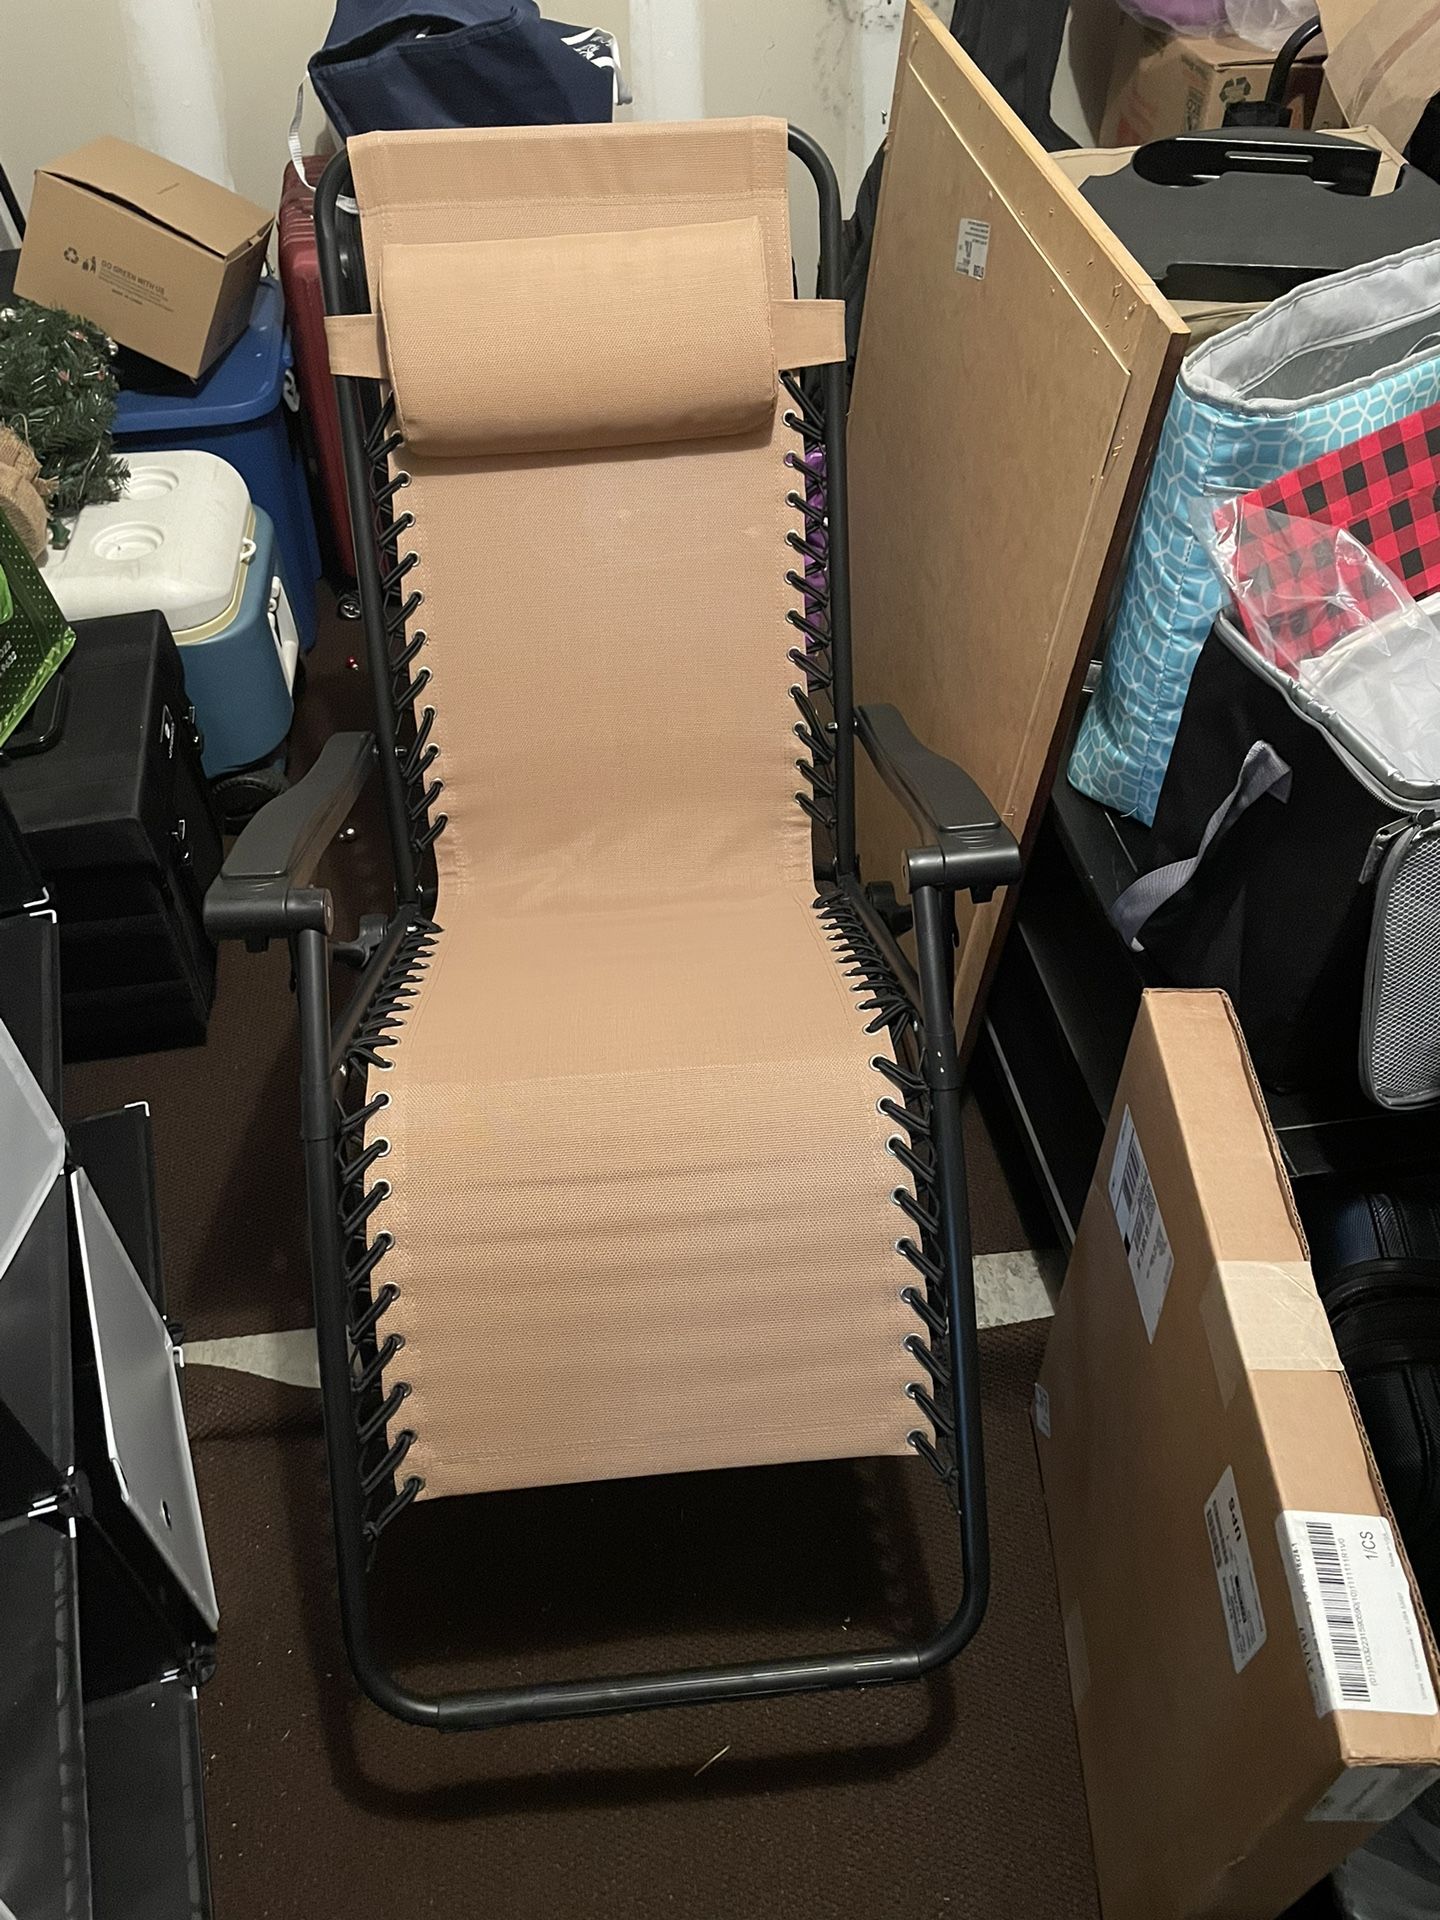 Fold Chair